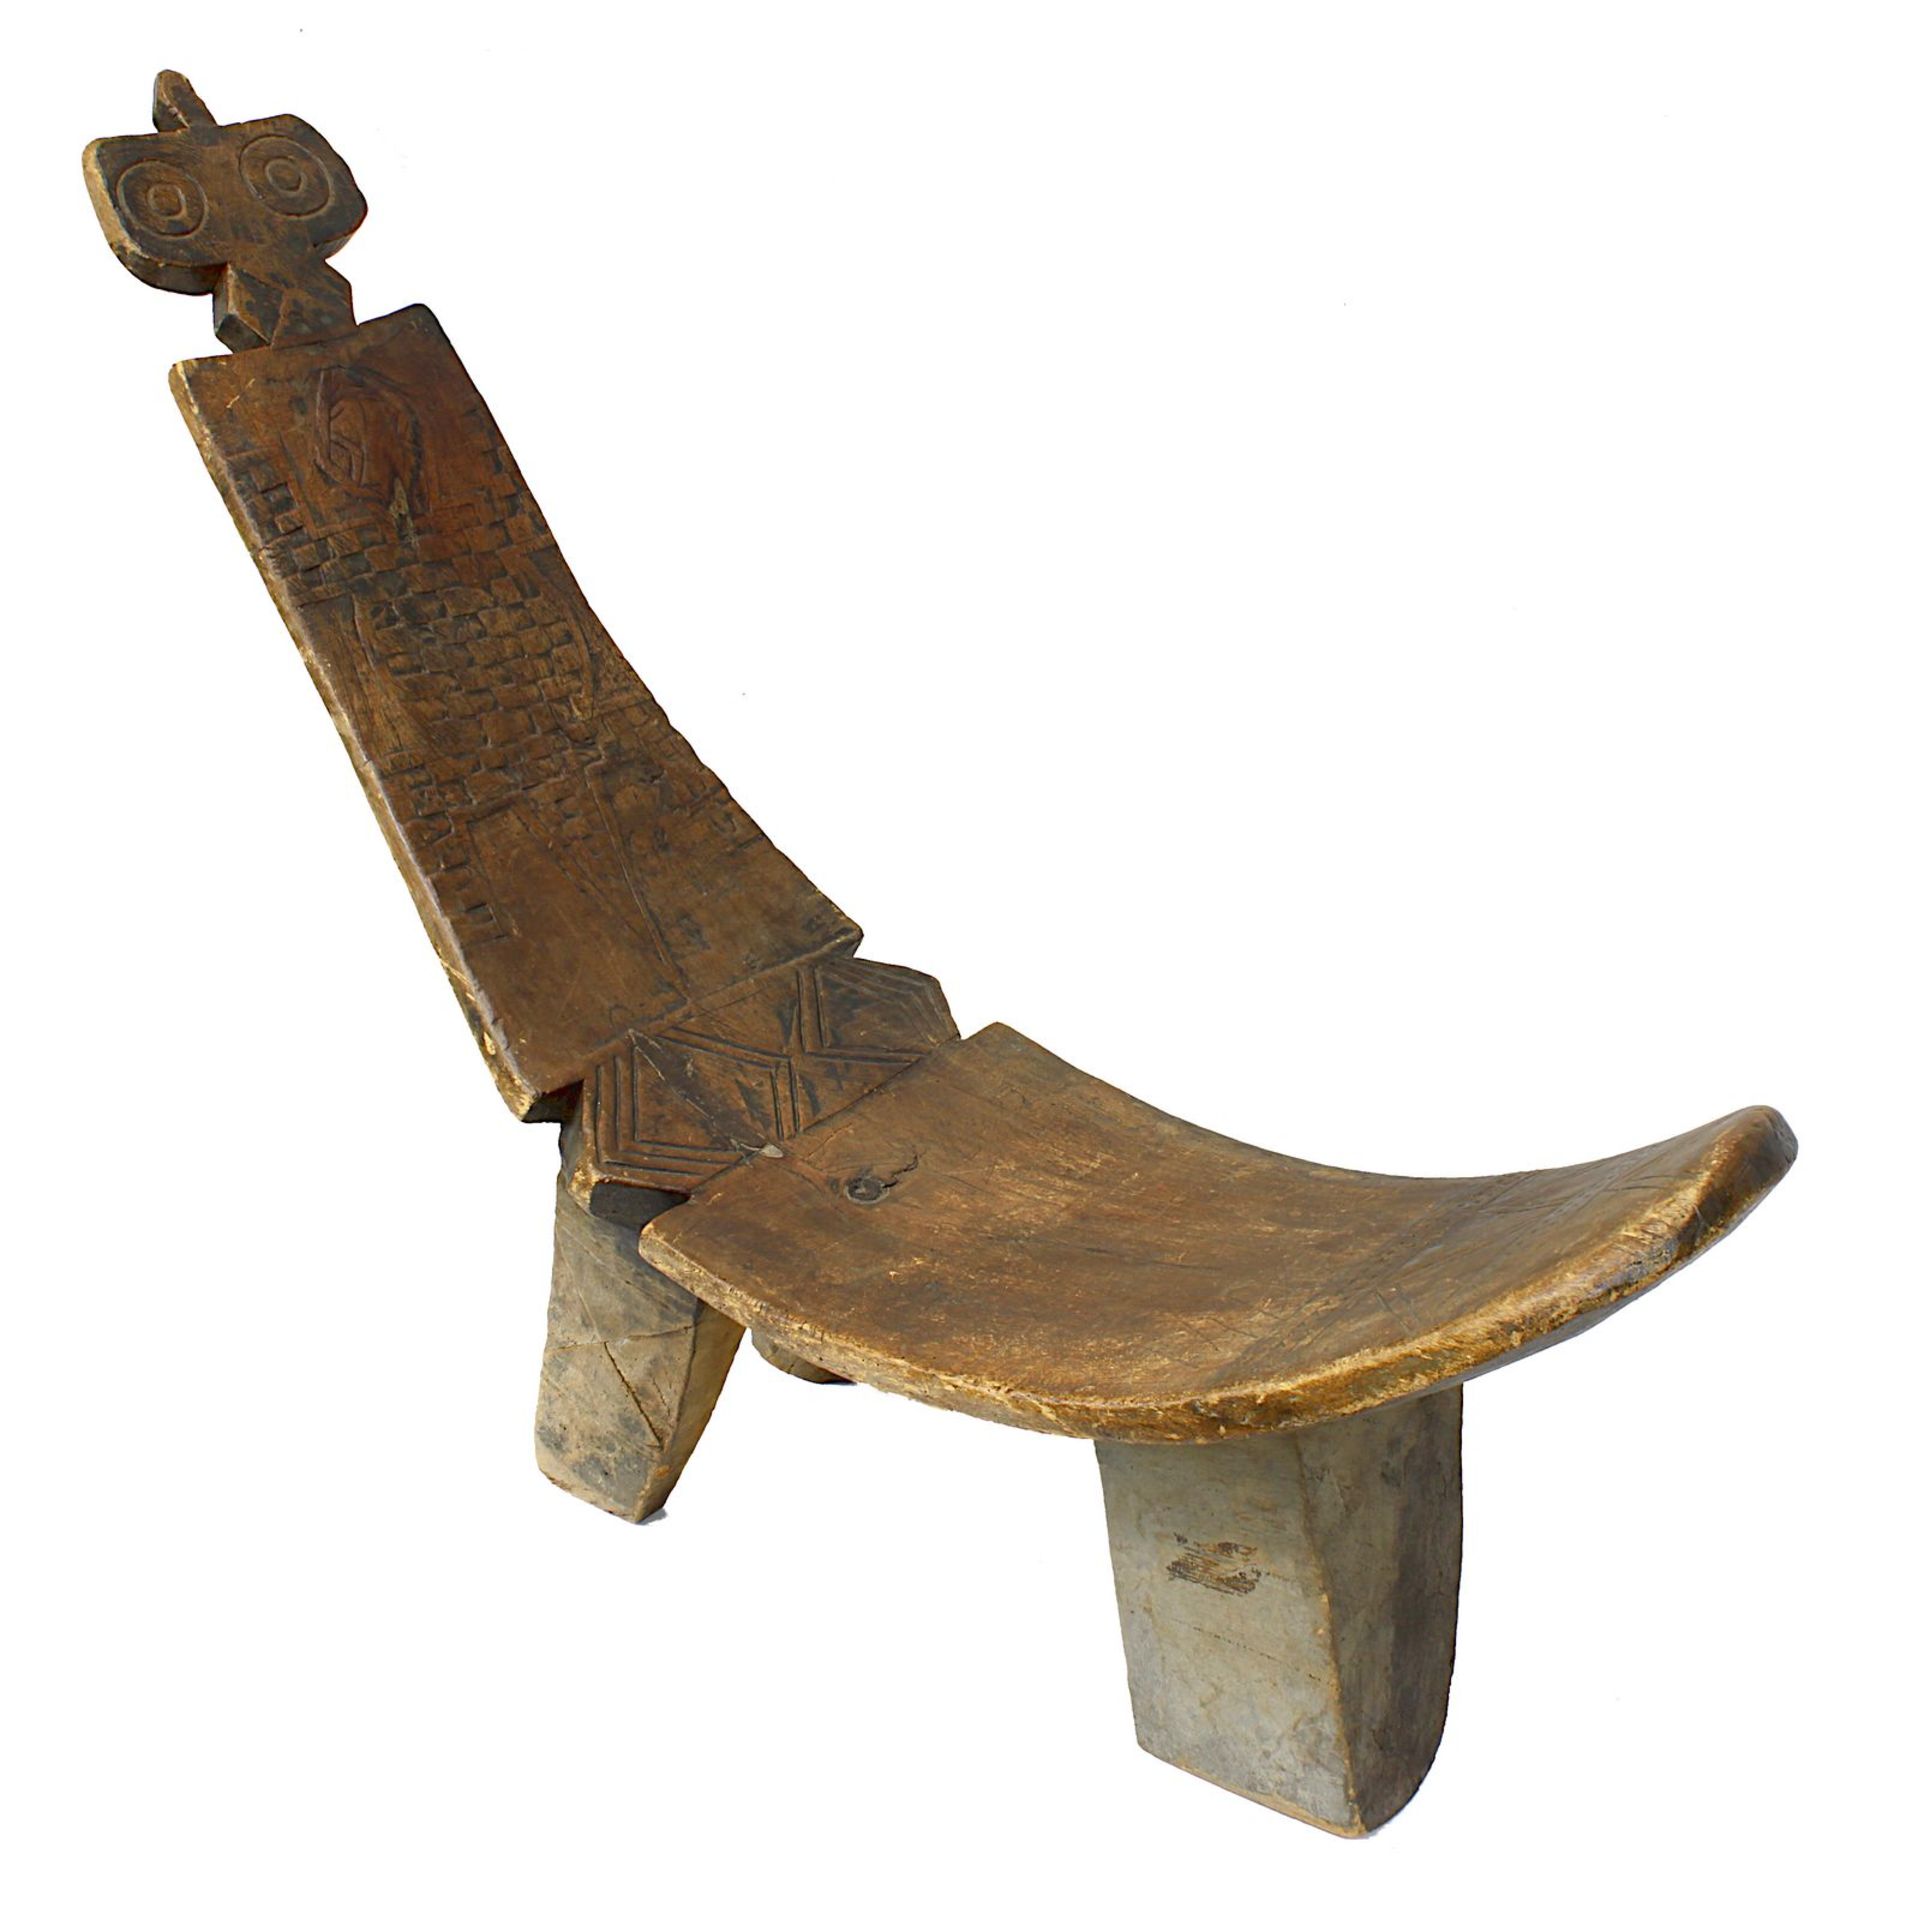 Großer Stuhl / Liege der Gurunsi oder Lobi, Burkina Faso, aus einem Stück gearbeitet, klassische